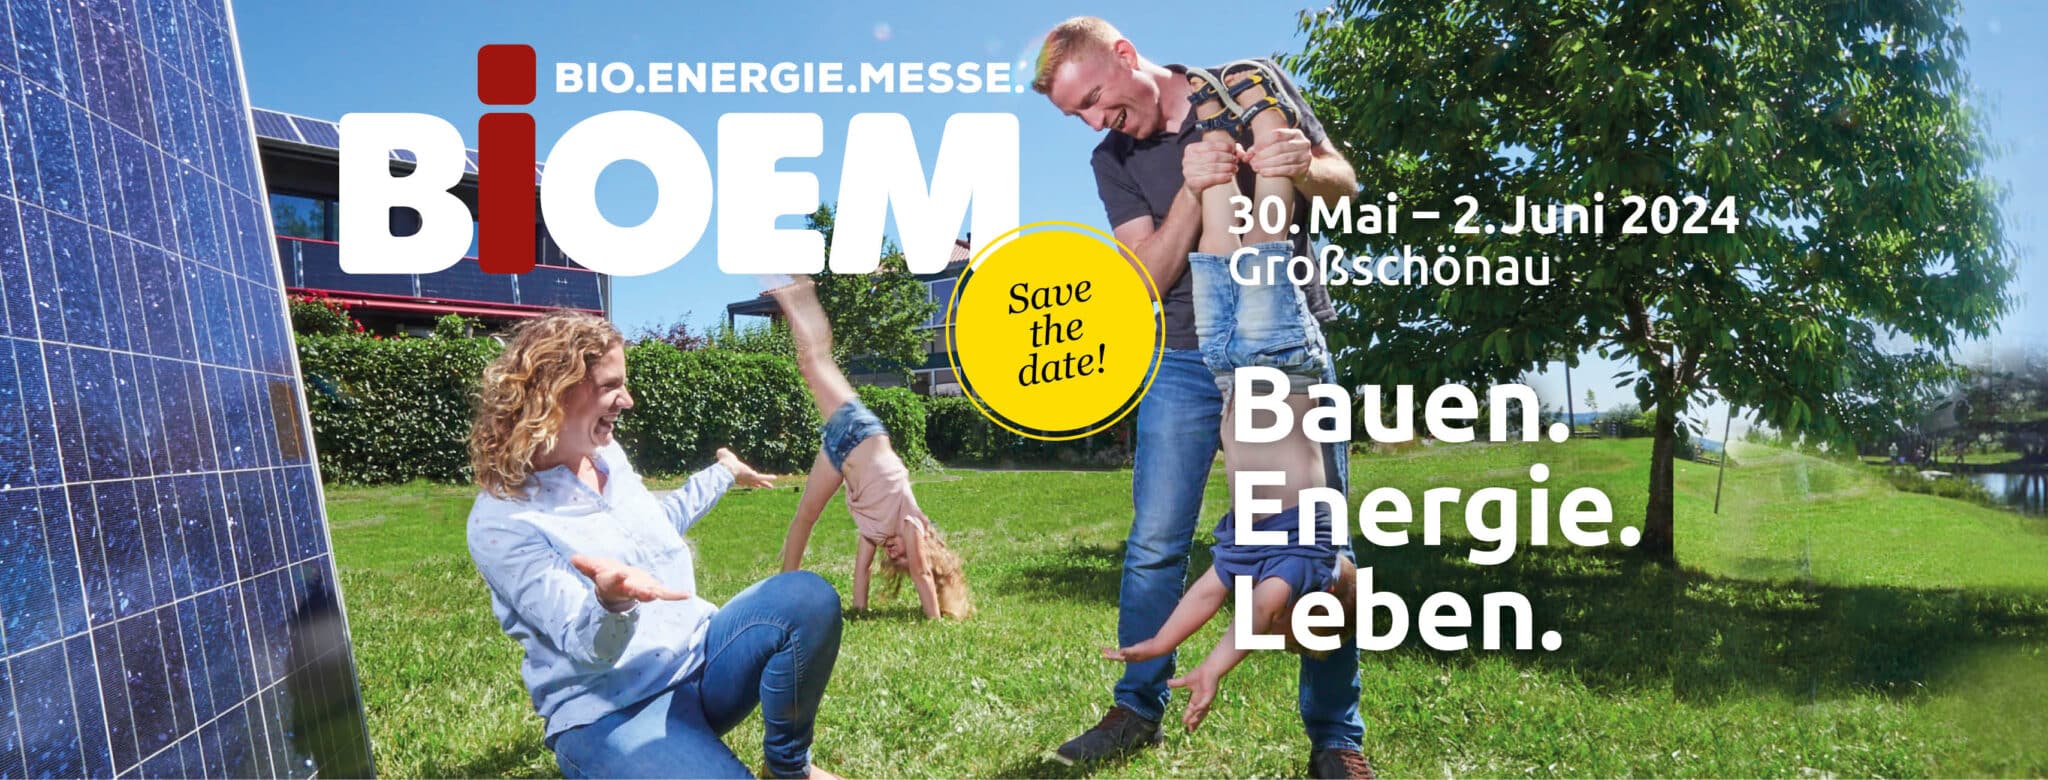 BIOEM – Bauen. Energie. Leben | Facebook II 2024 scaled